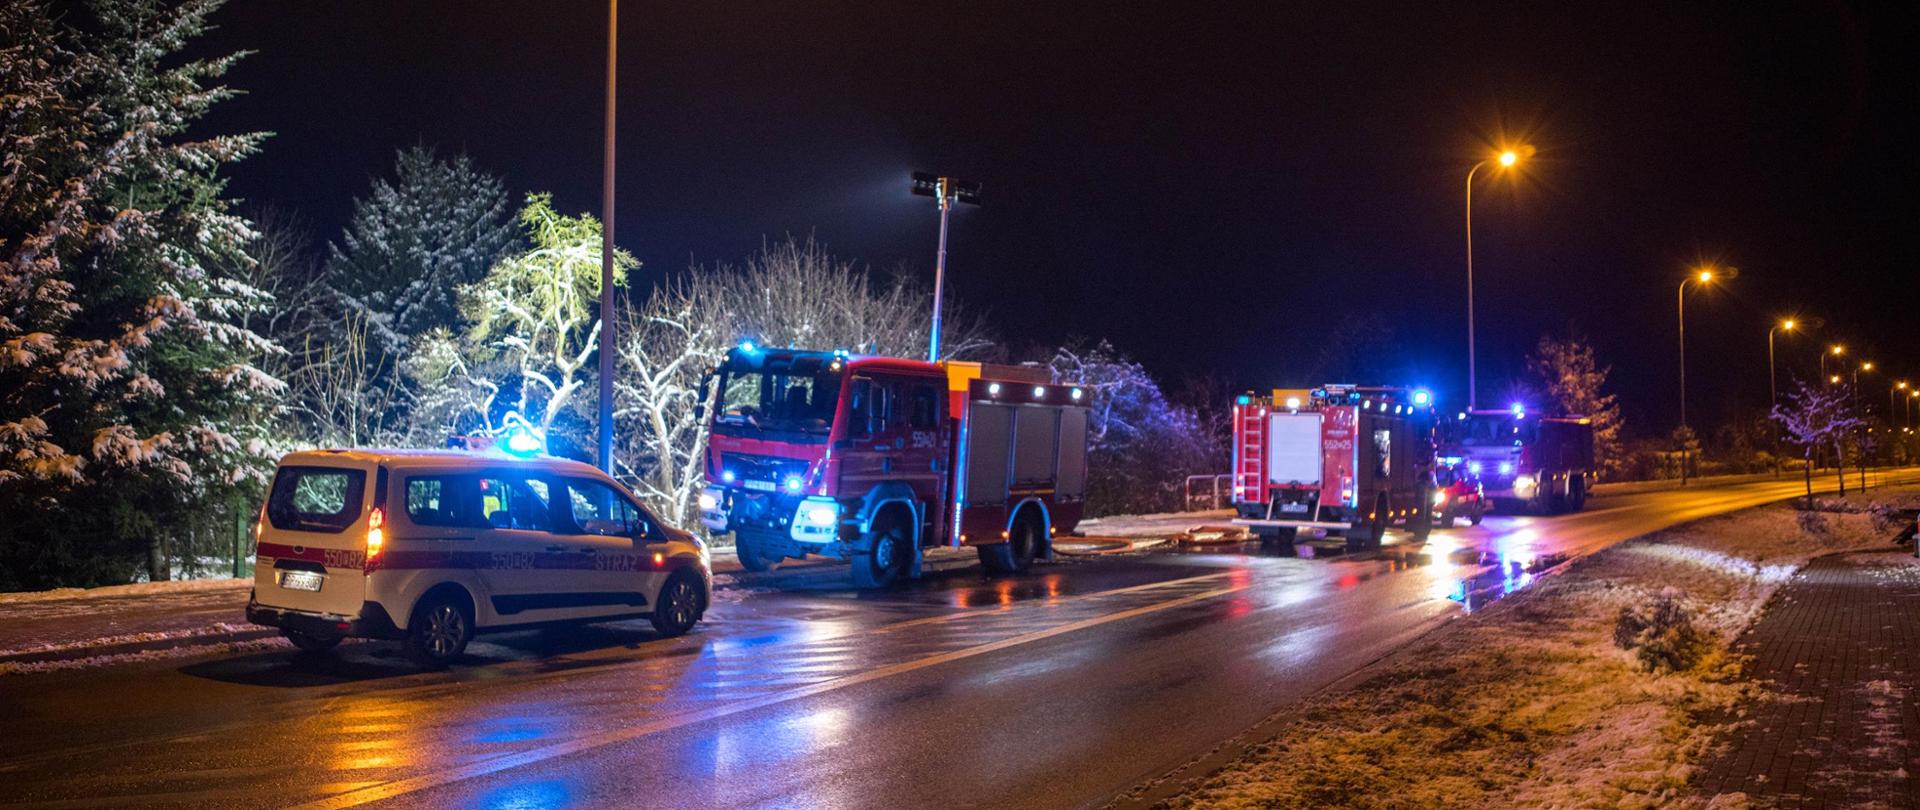 Na zdjęciu widać cztery samochody pożarnicze podczas działań.